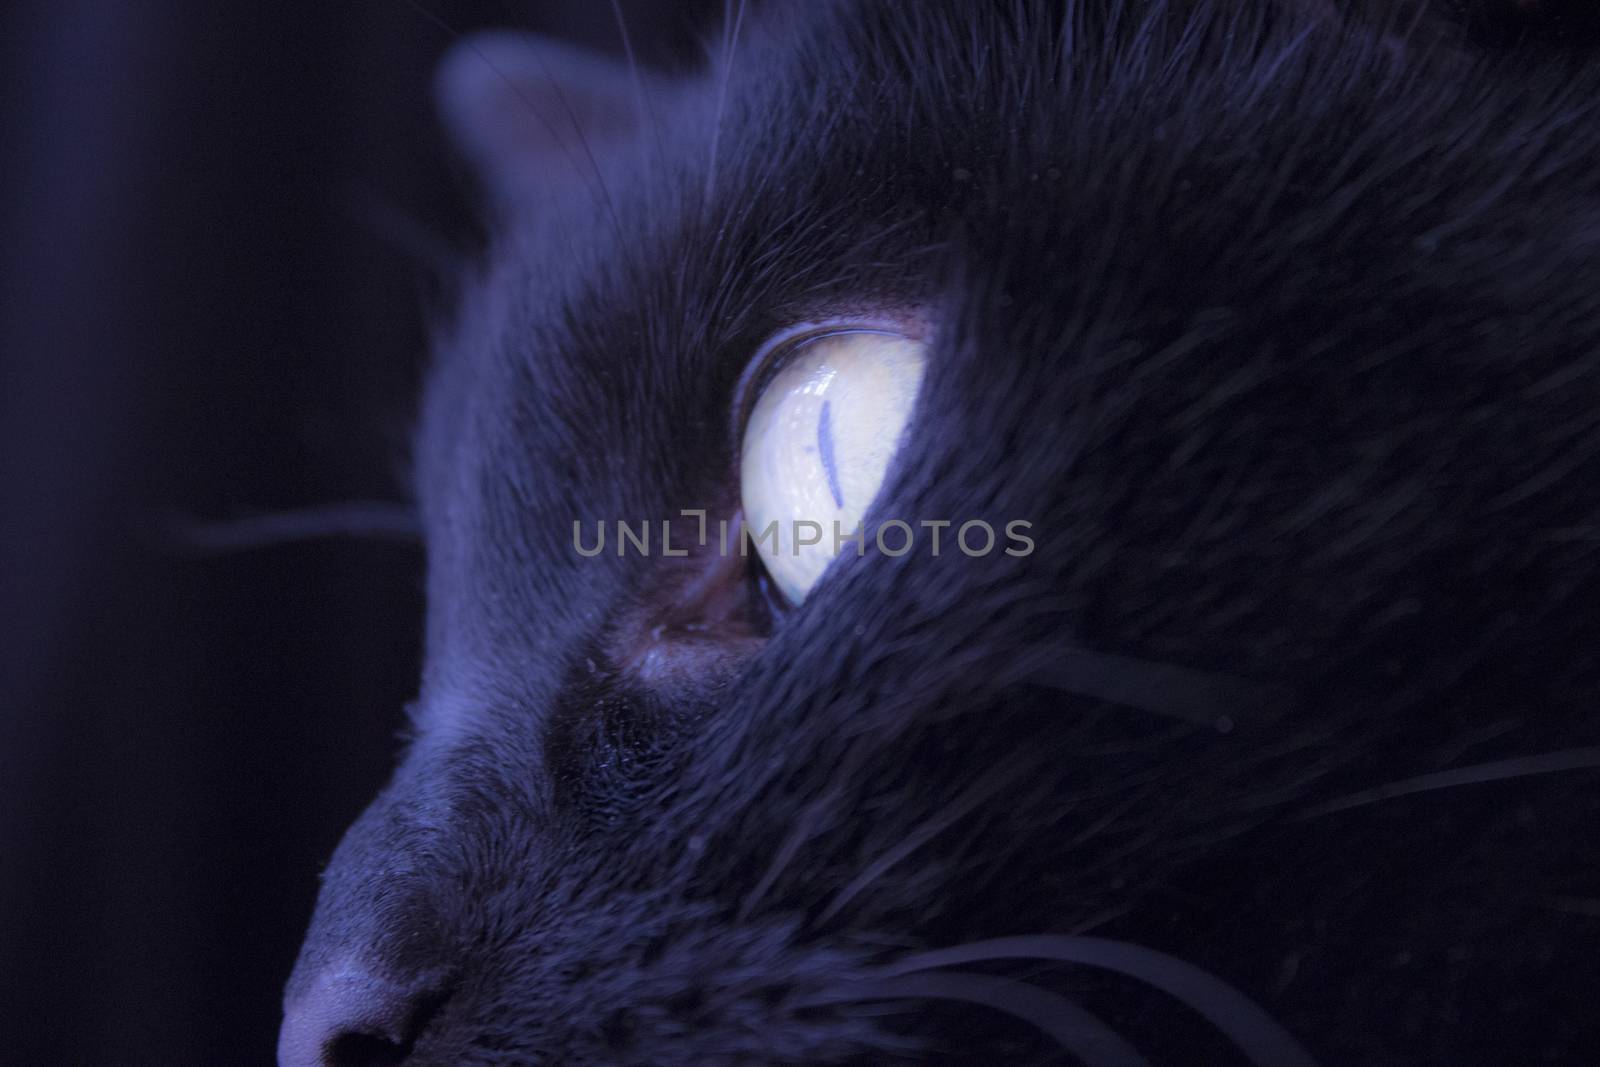 Close-up of a cat's eye in black. Todos los derechos reservados.Prohibida su utilización sin autorización. Copyright Gema Ibarra.